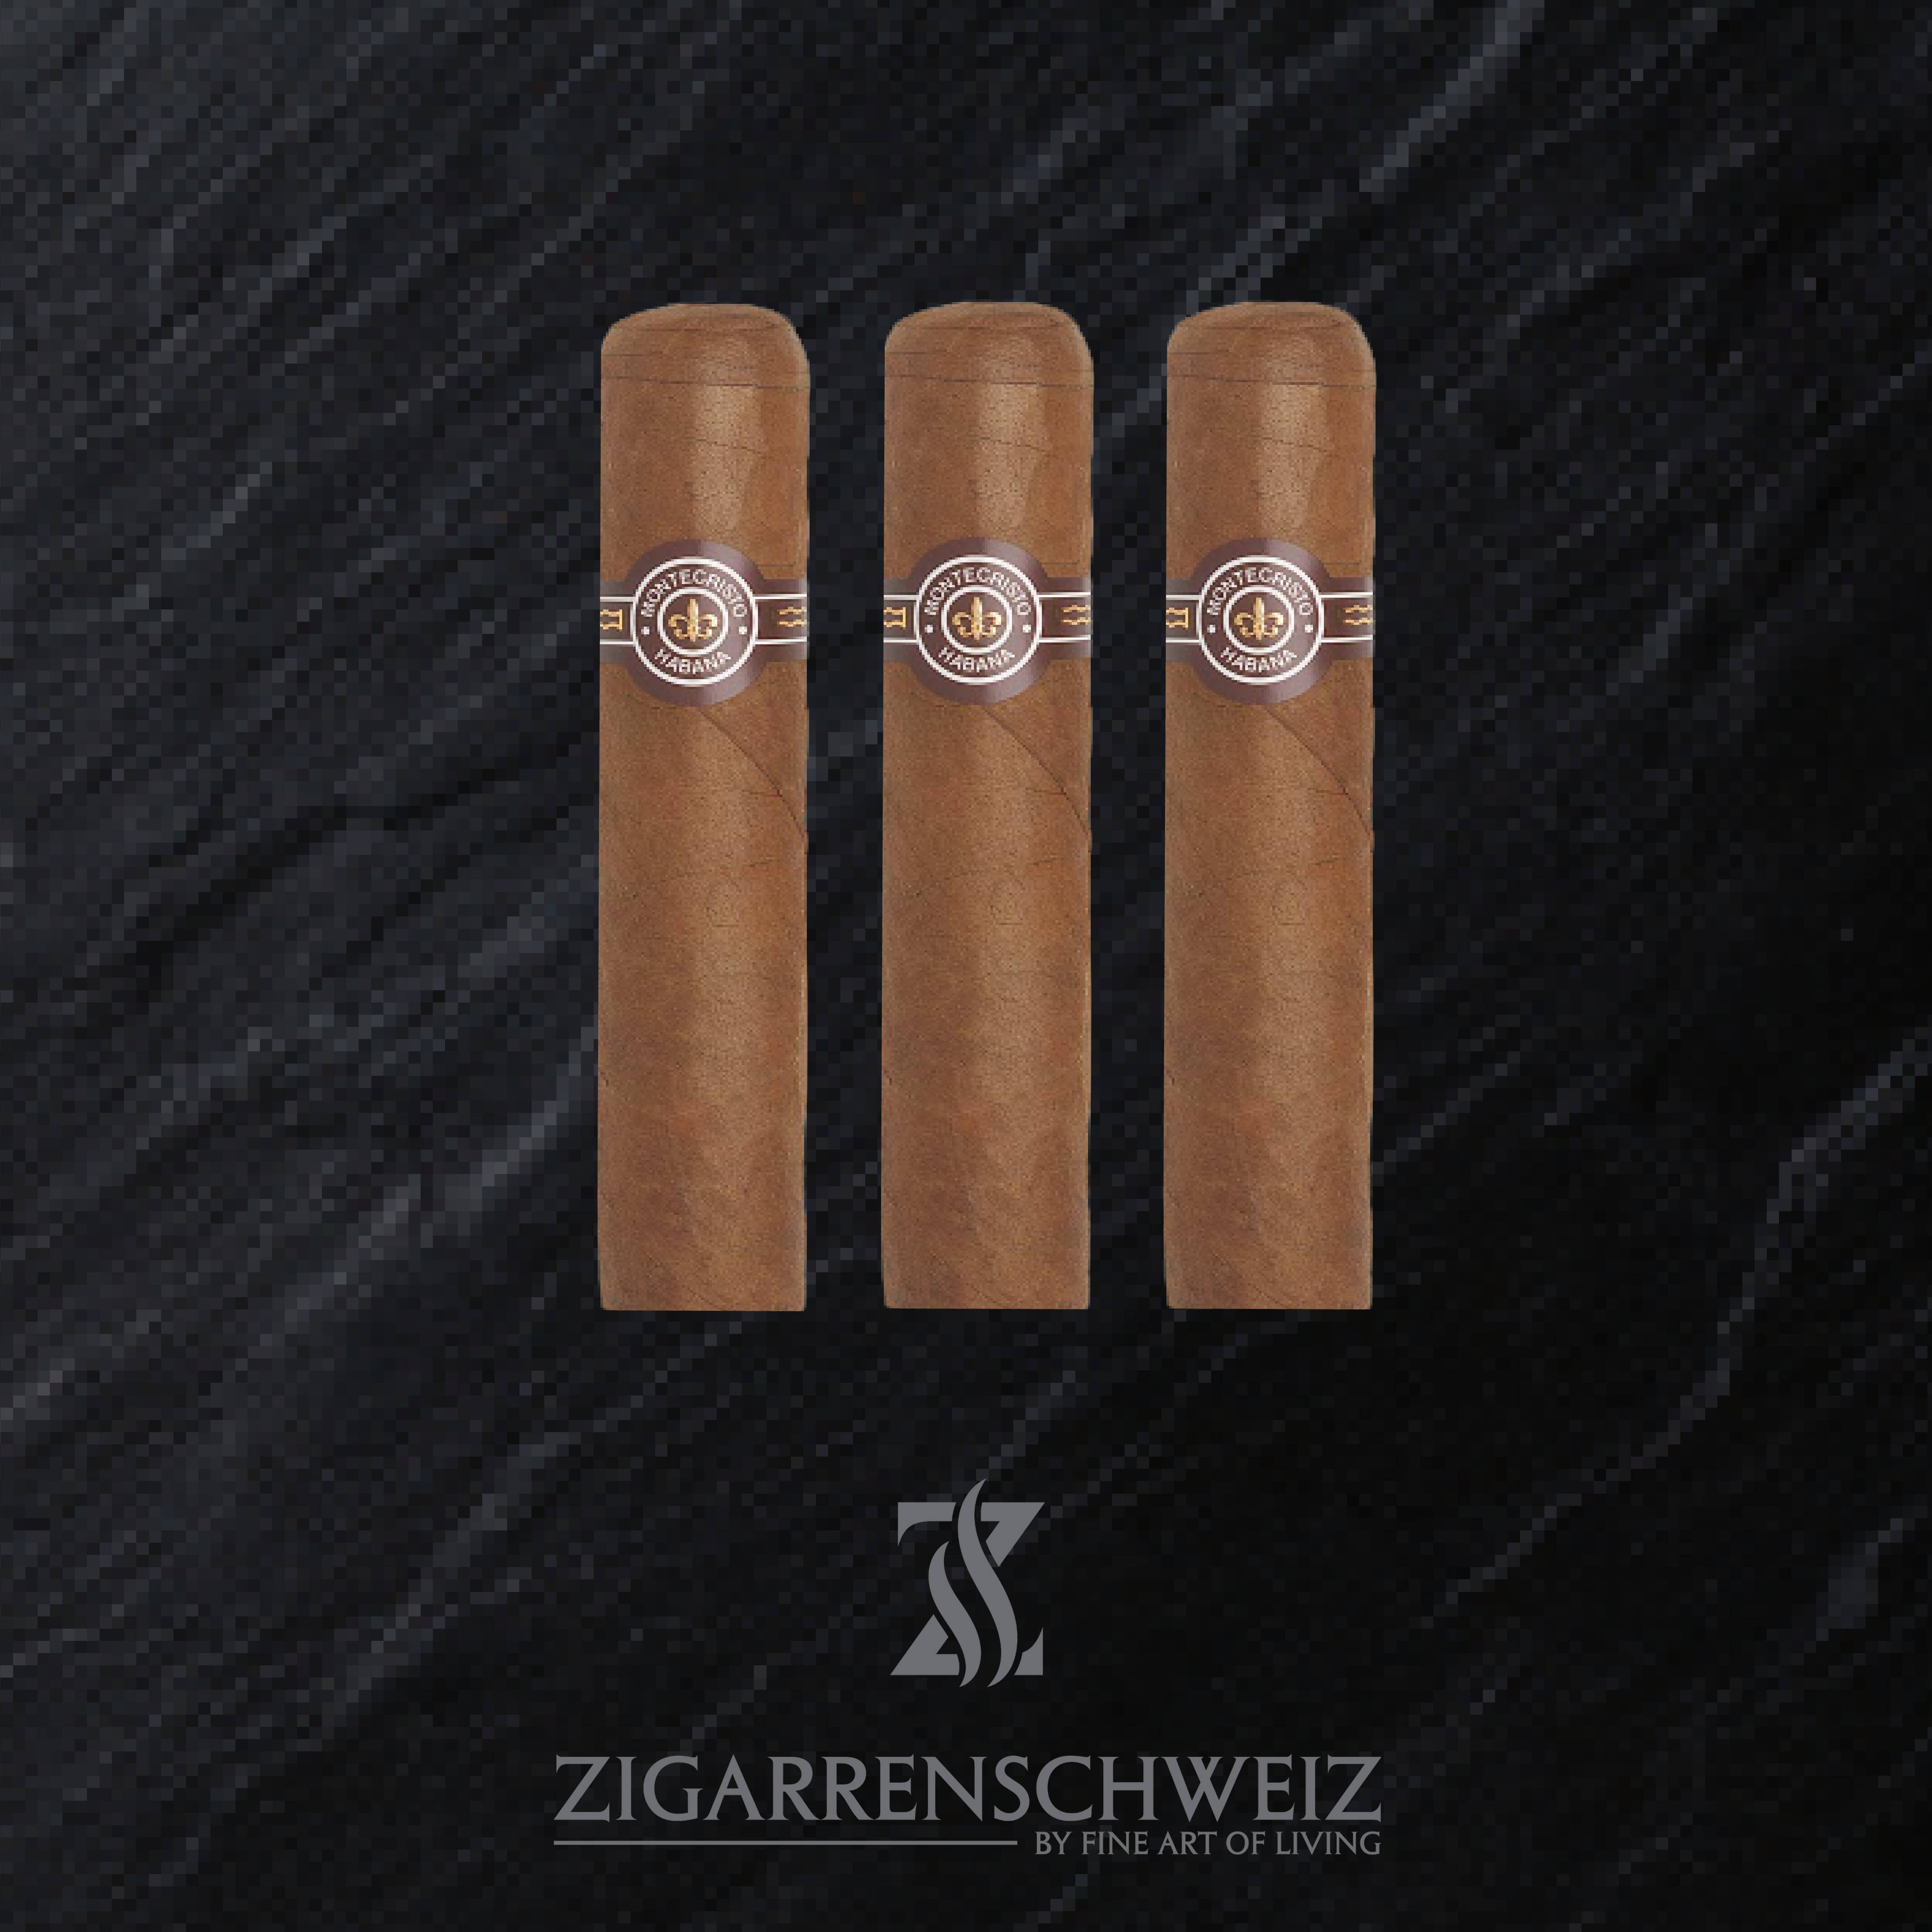 3er Etui Montecristo Petit Edmundo Zigarren von Zigarren Schweiz